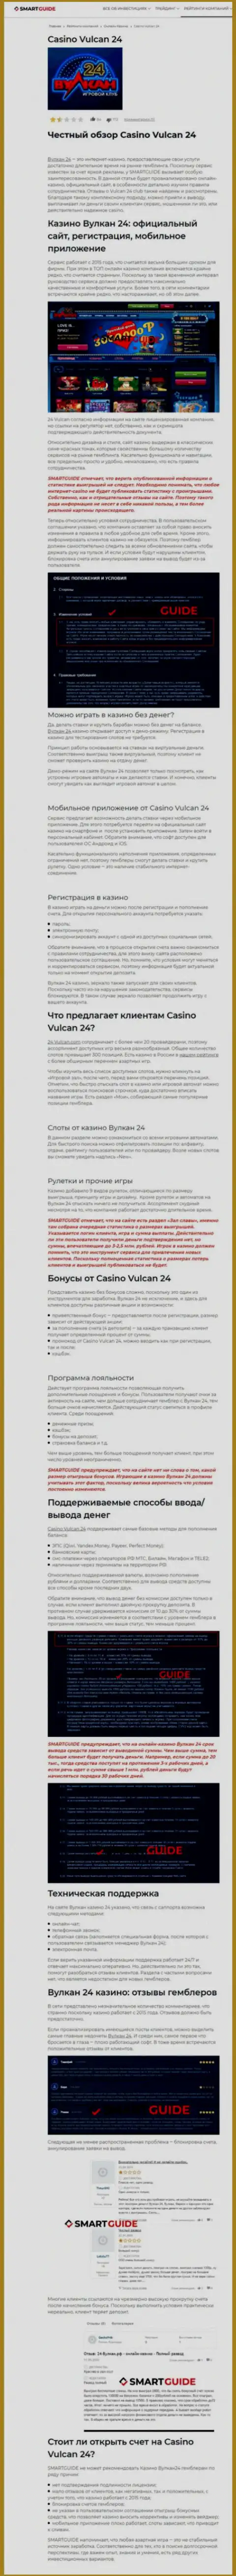 Wulkan24 - это организация, зарабатывающая на воровстве депозитов собственных клиентов (обзор)